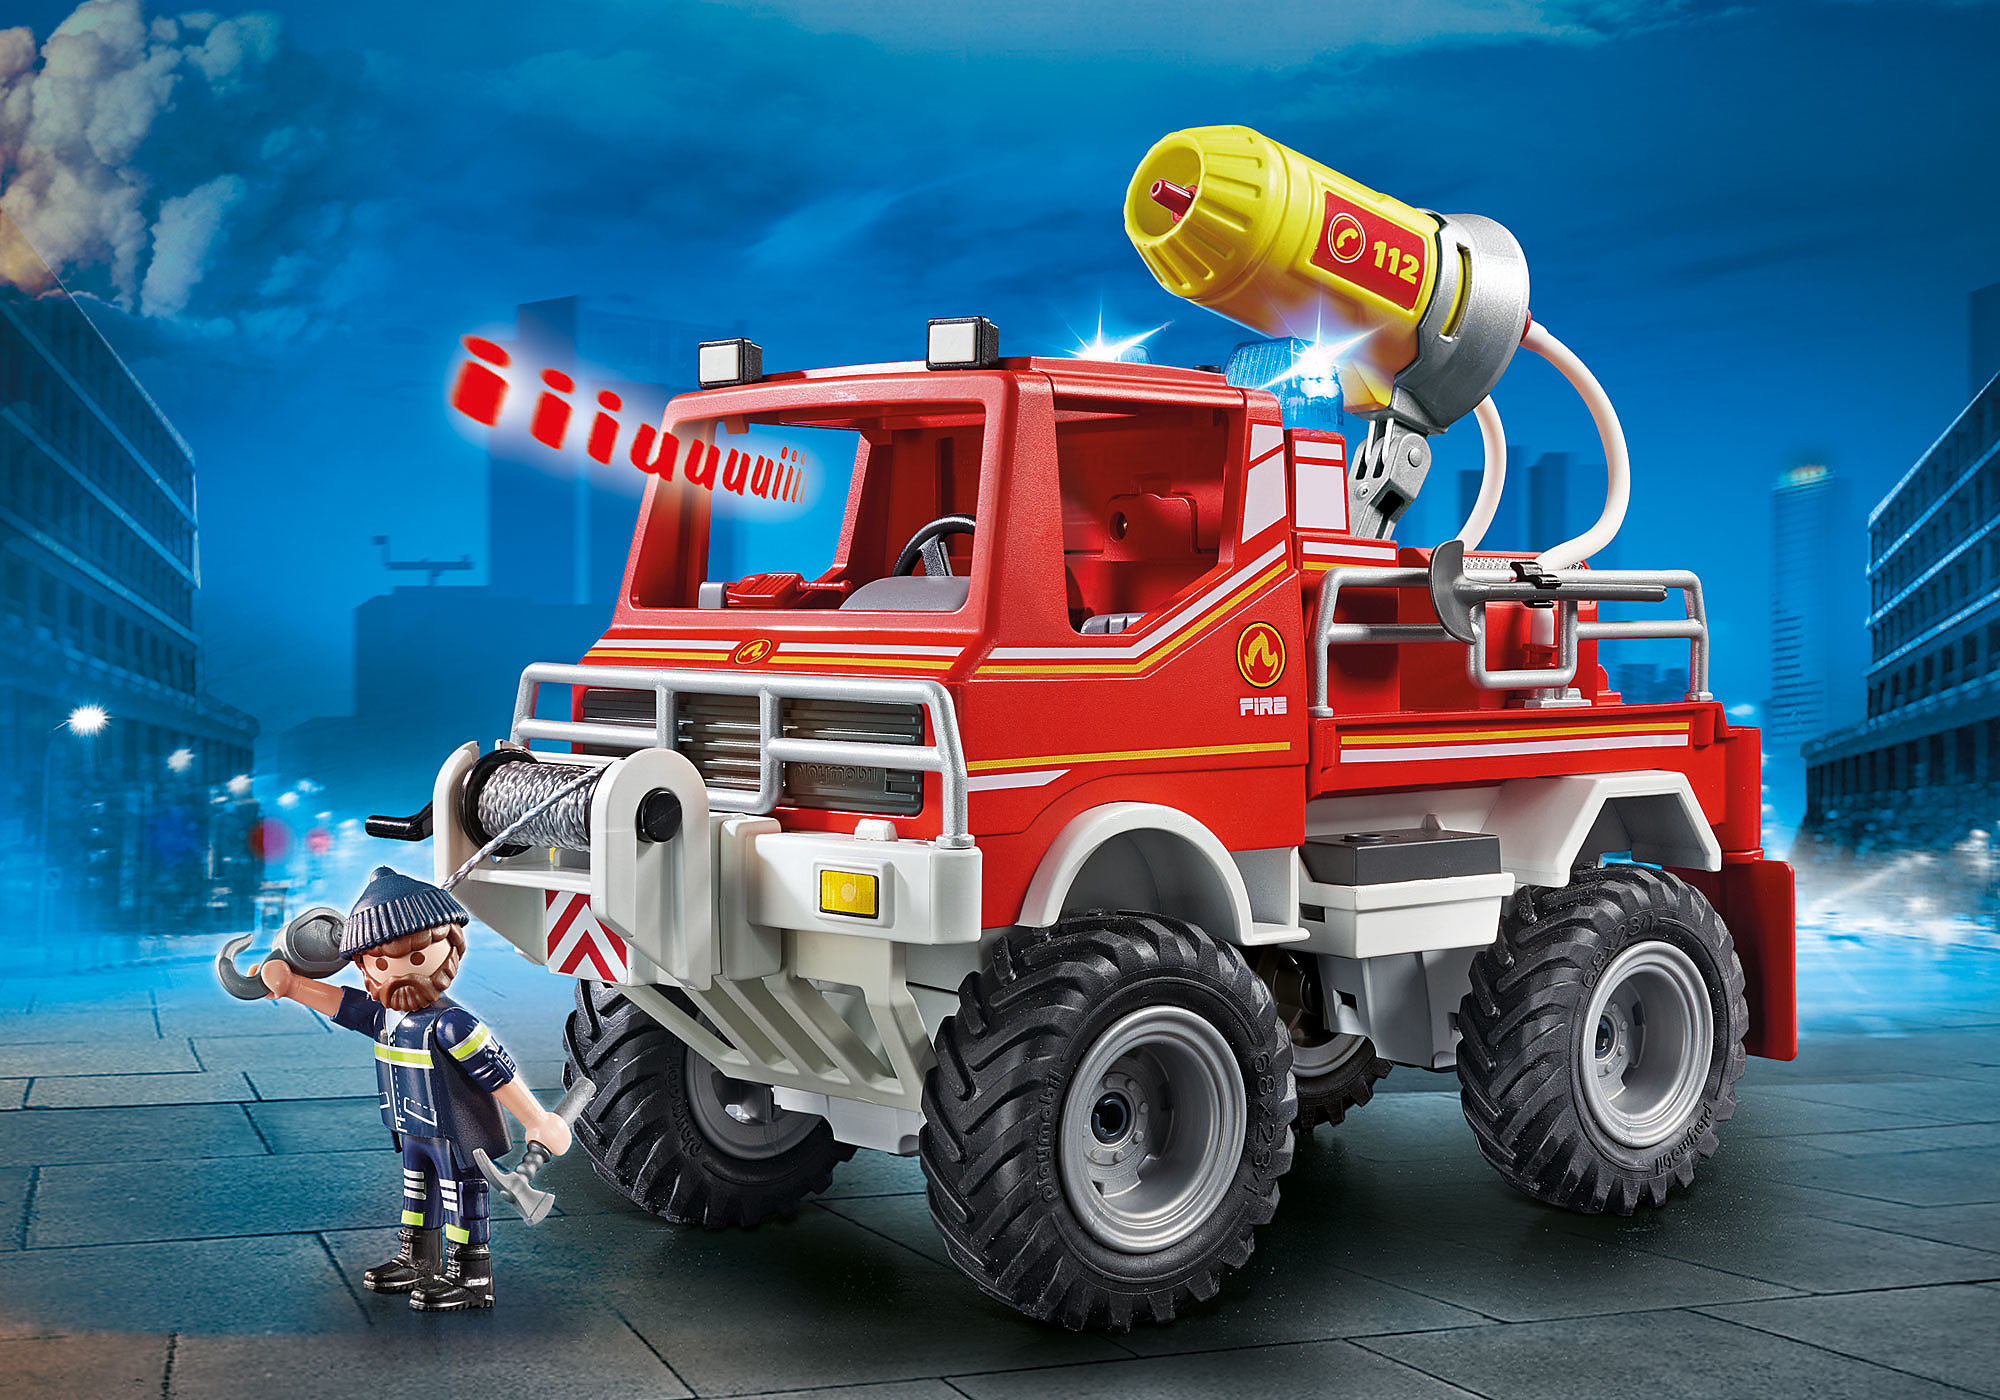 Playmobil 9466 - city action - 4x4 de pompier avec lance-eau - La